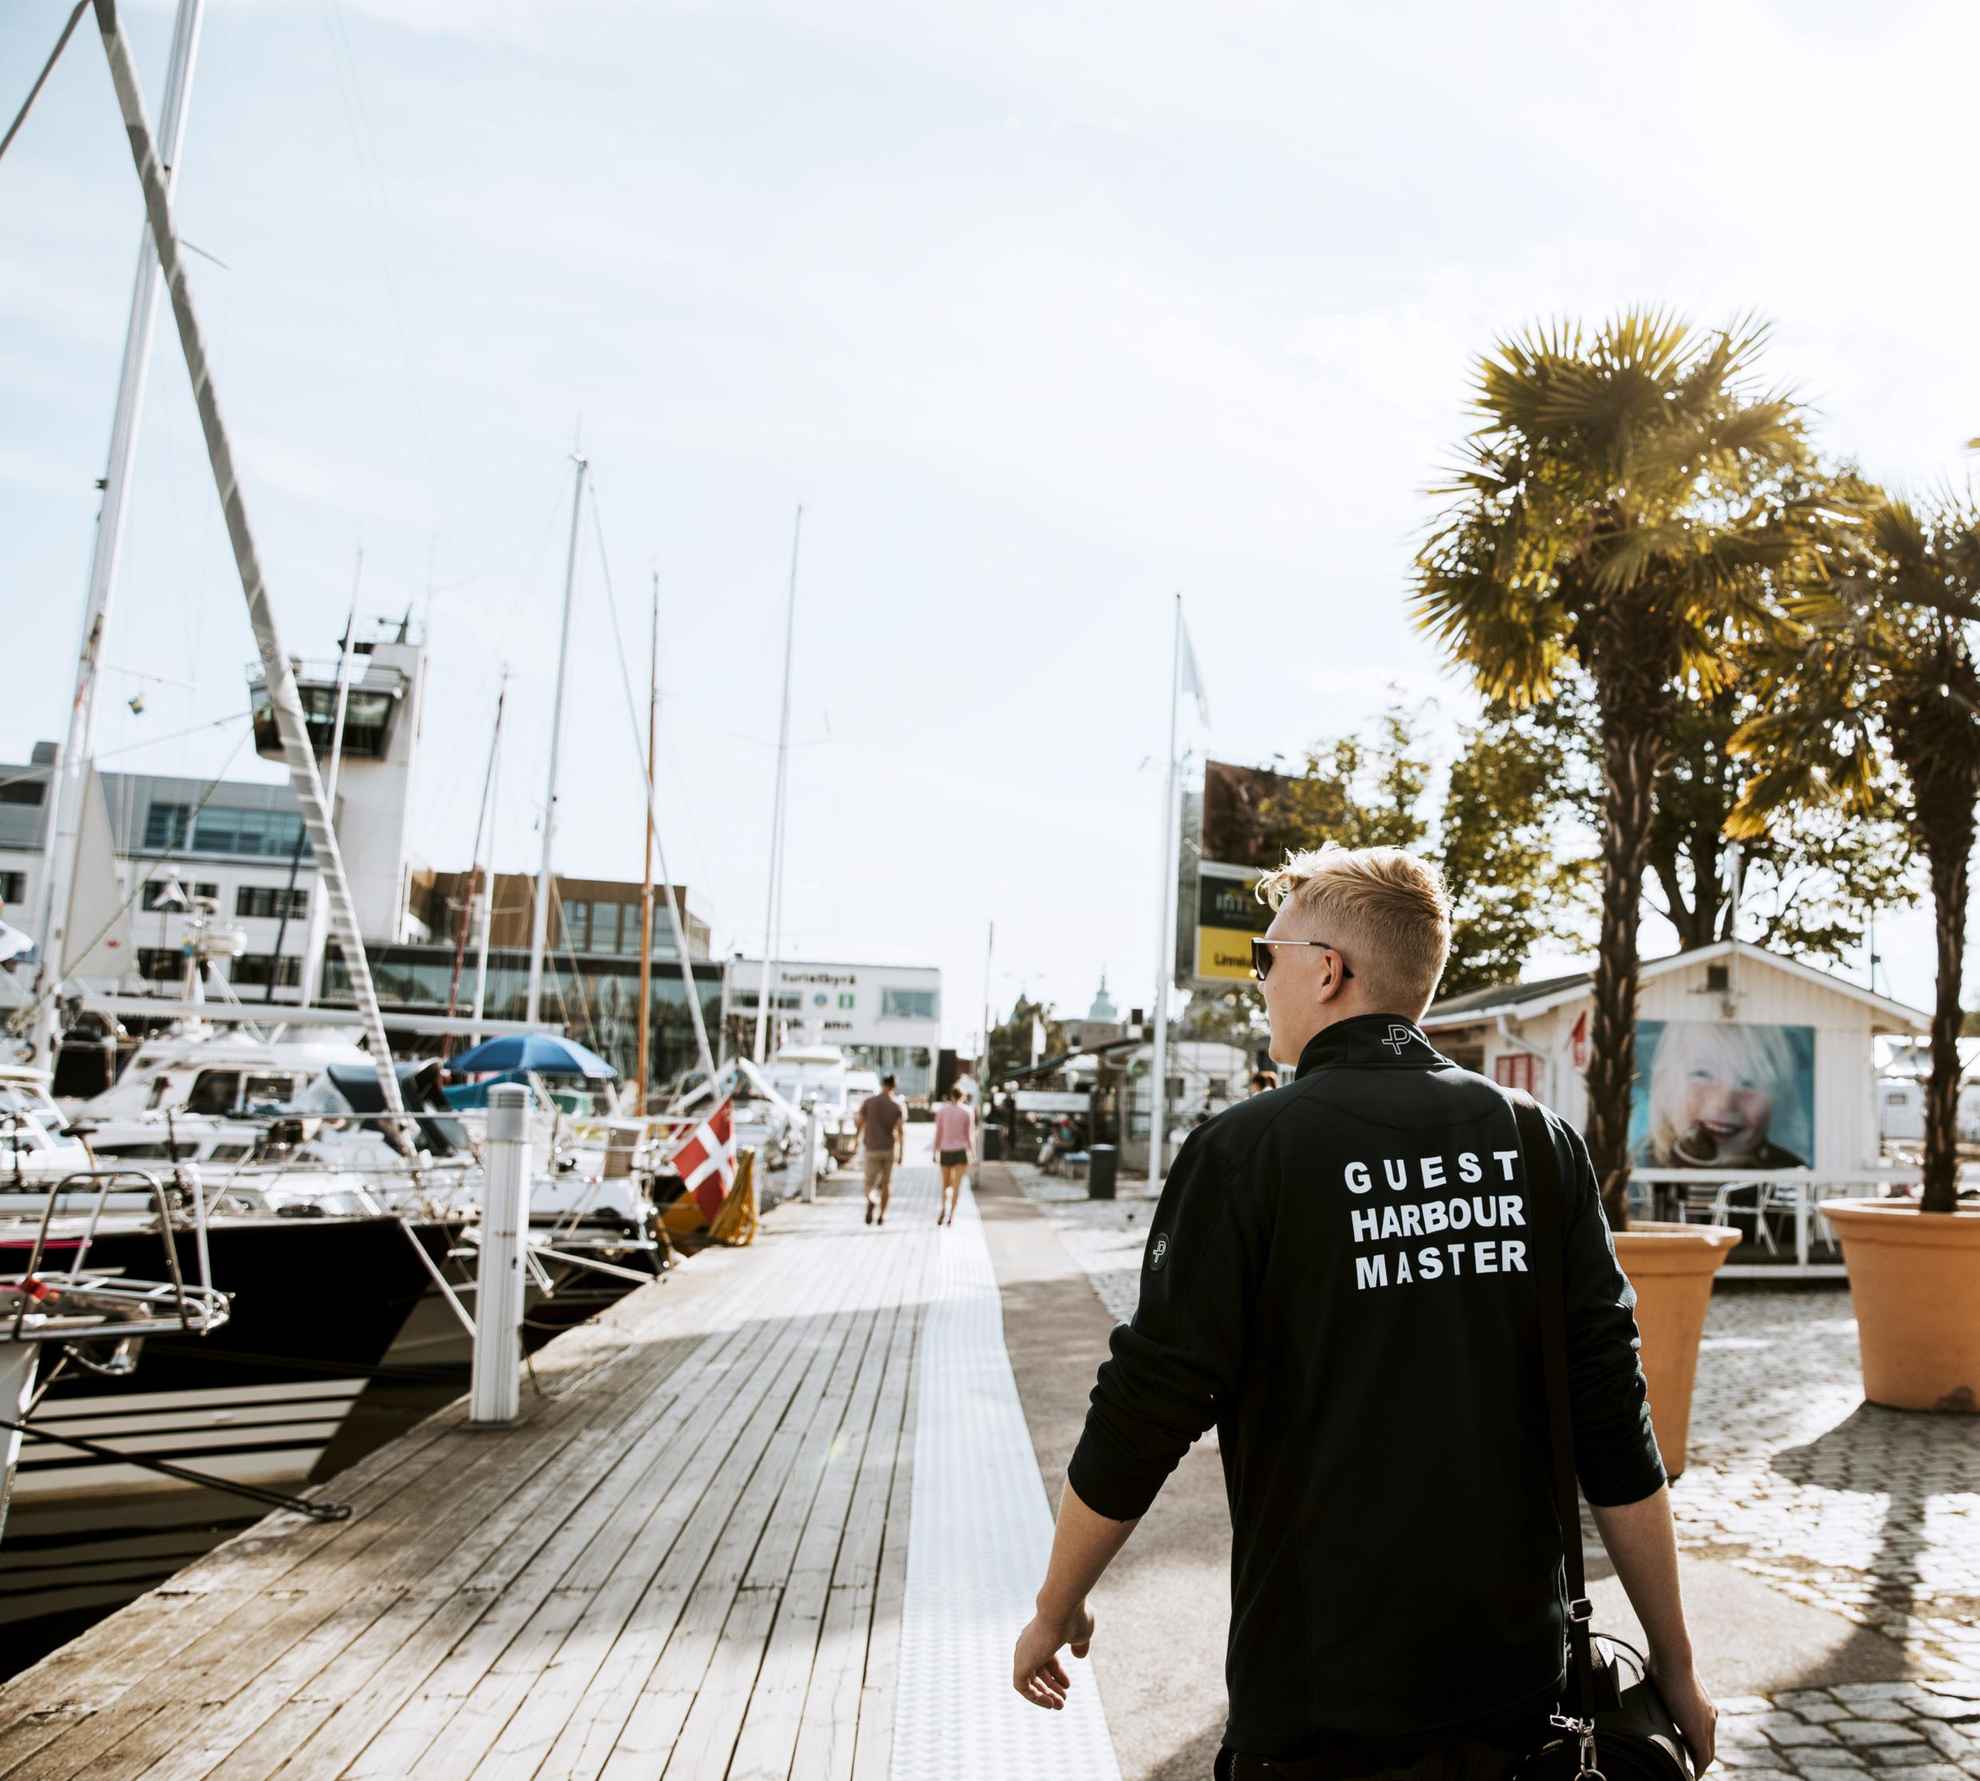 Der Mann mit der Aufschrift „Guest Harbour Master“ auf der Rückseite seines Pullovers geht am Gasthafen von Kalmar die Boote entlang..